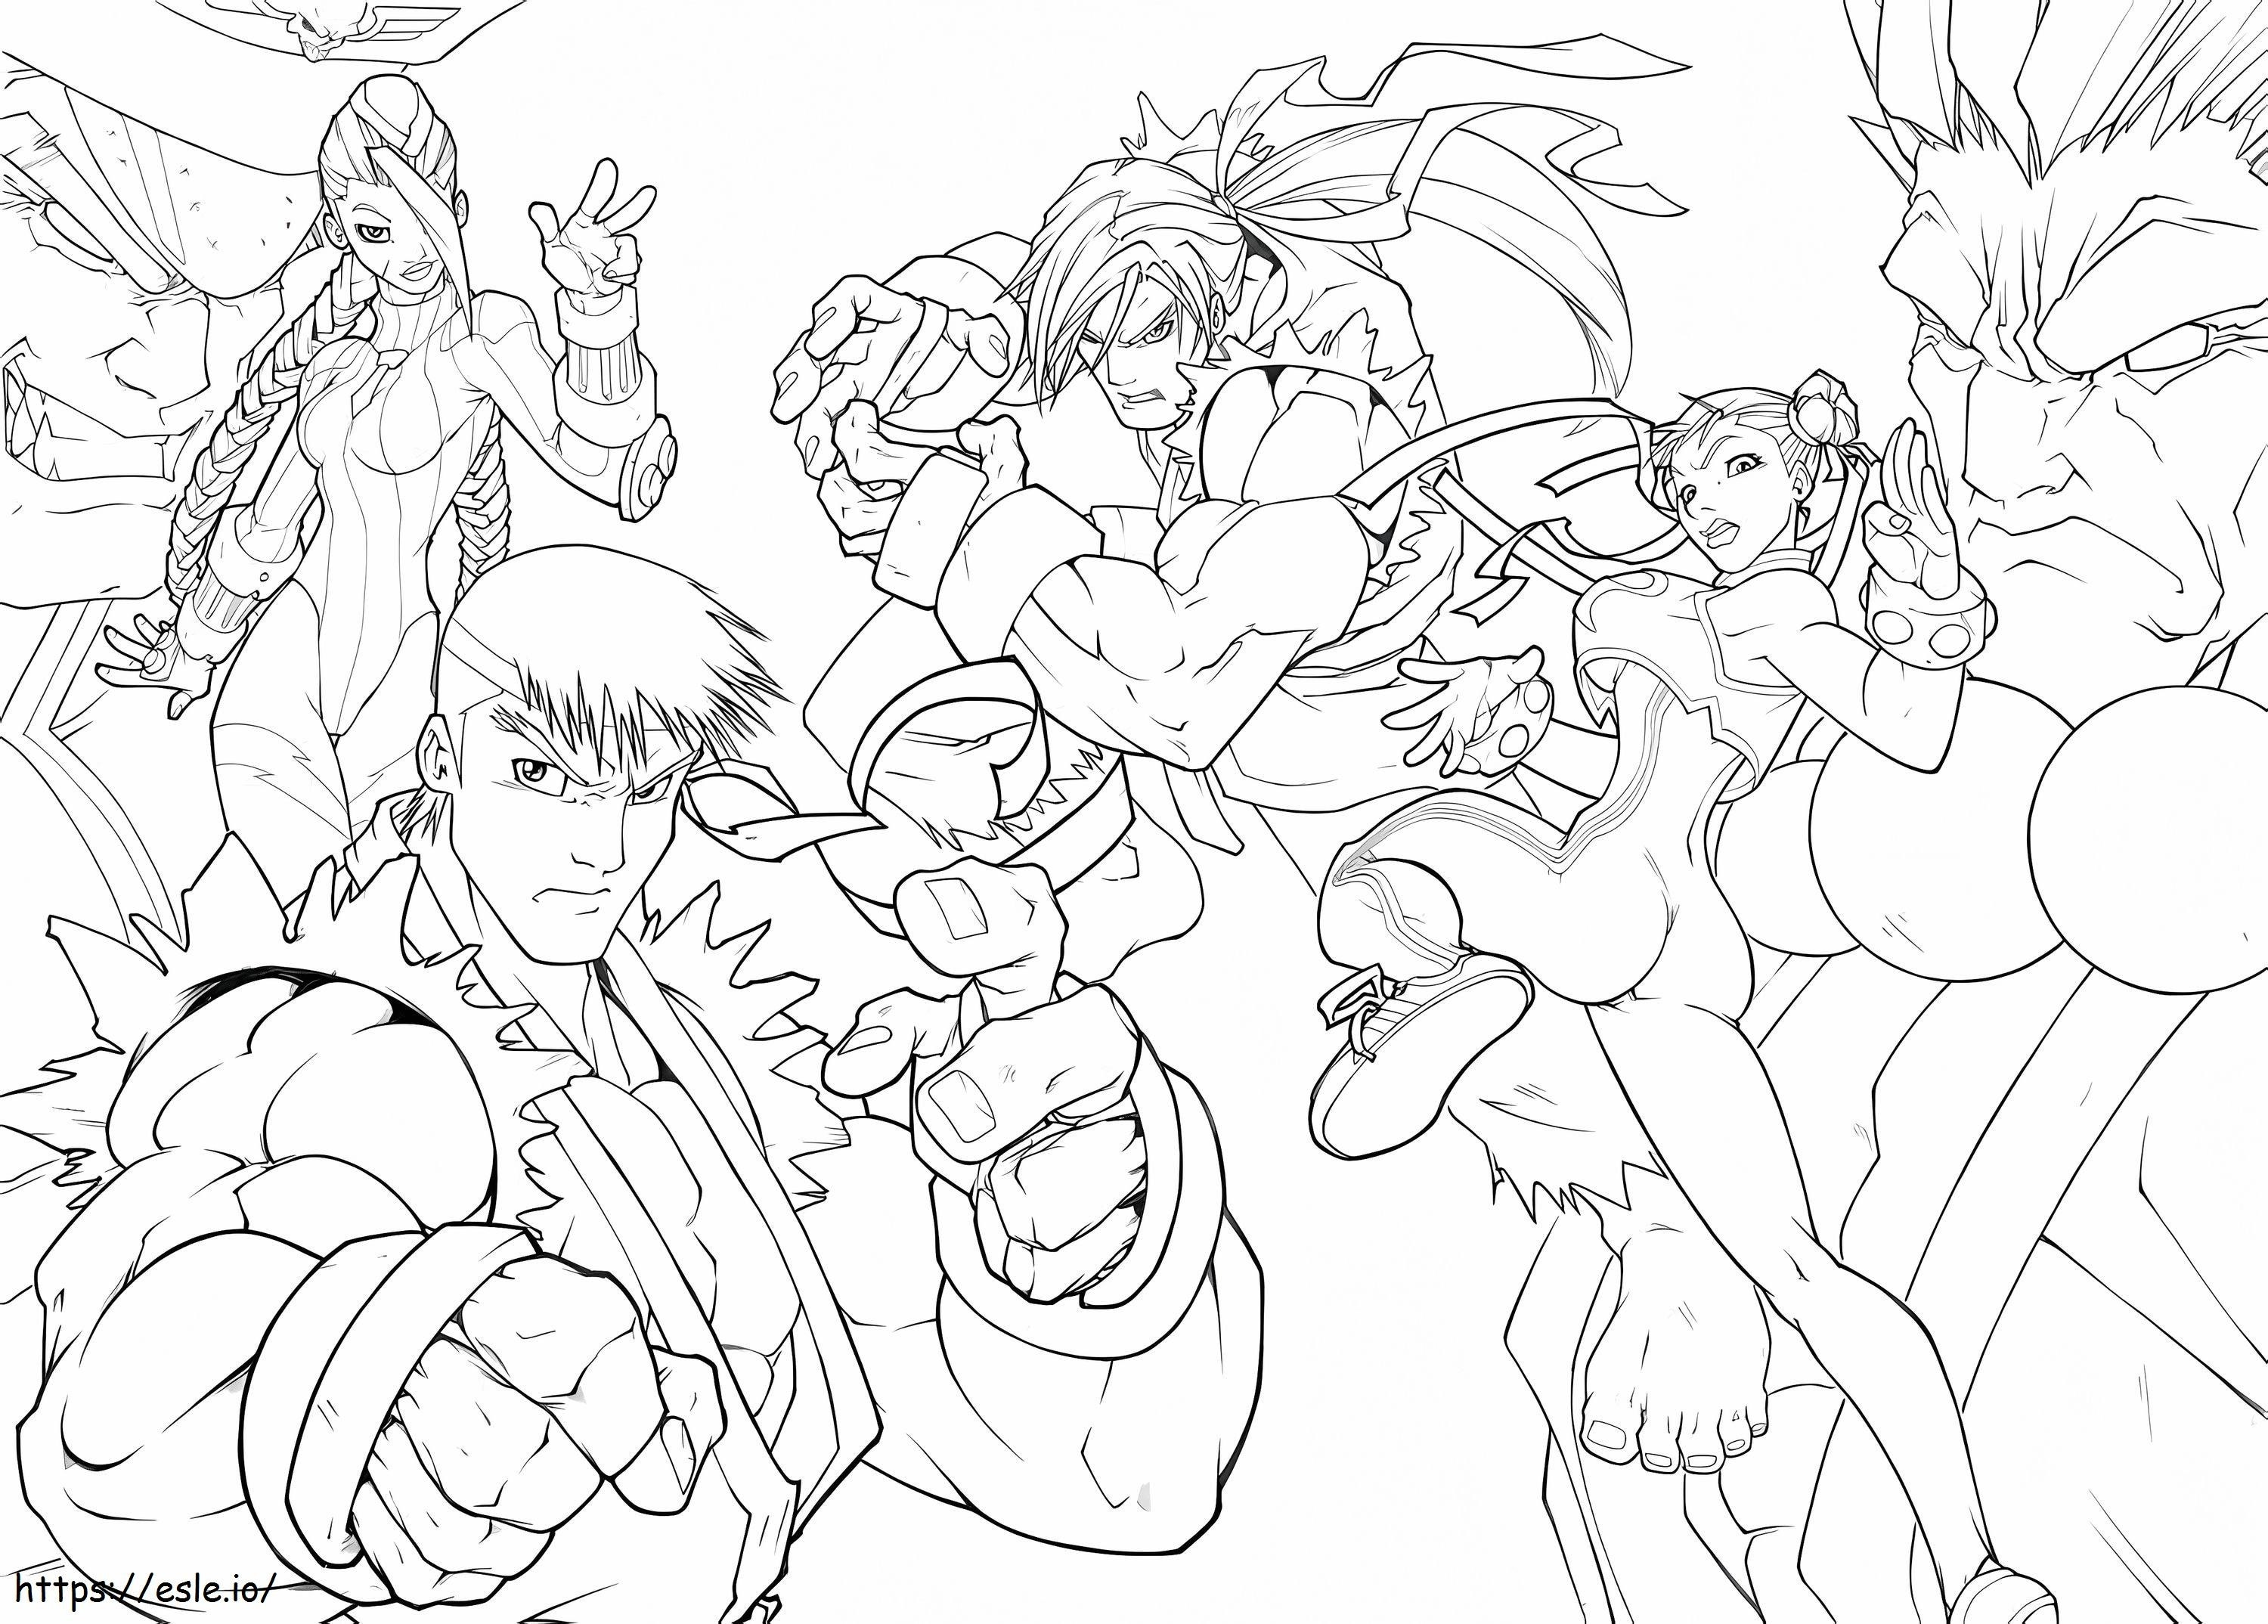 Personages uit Street Fighter kleurplaat kleurplaat